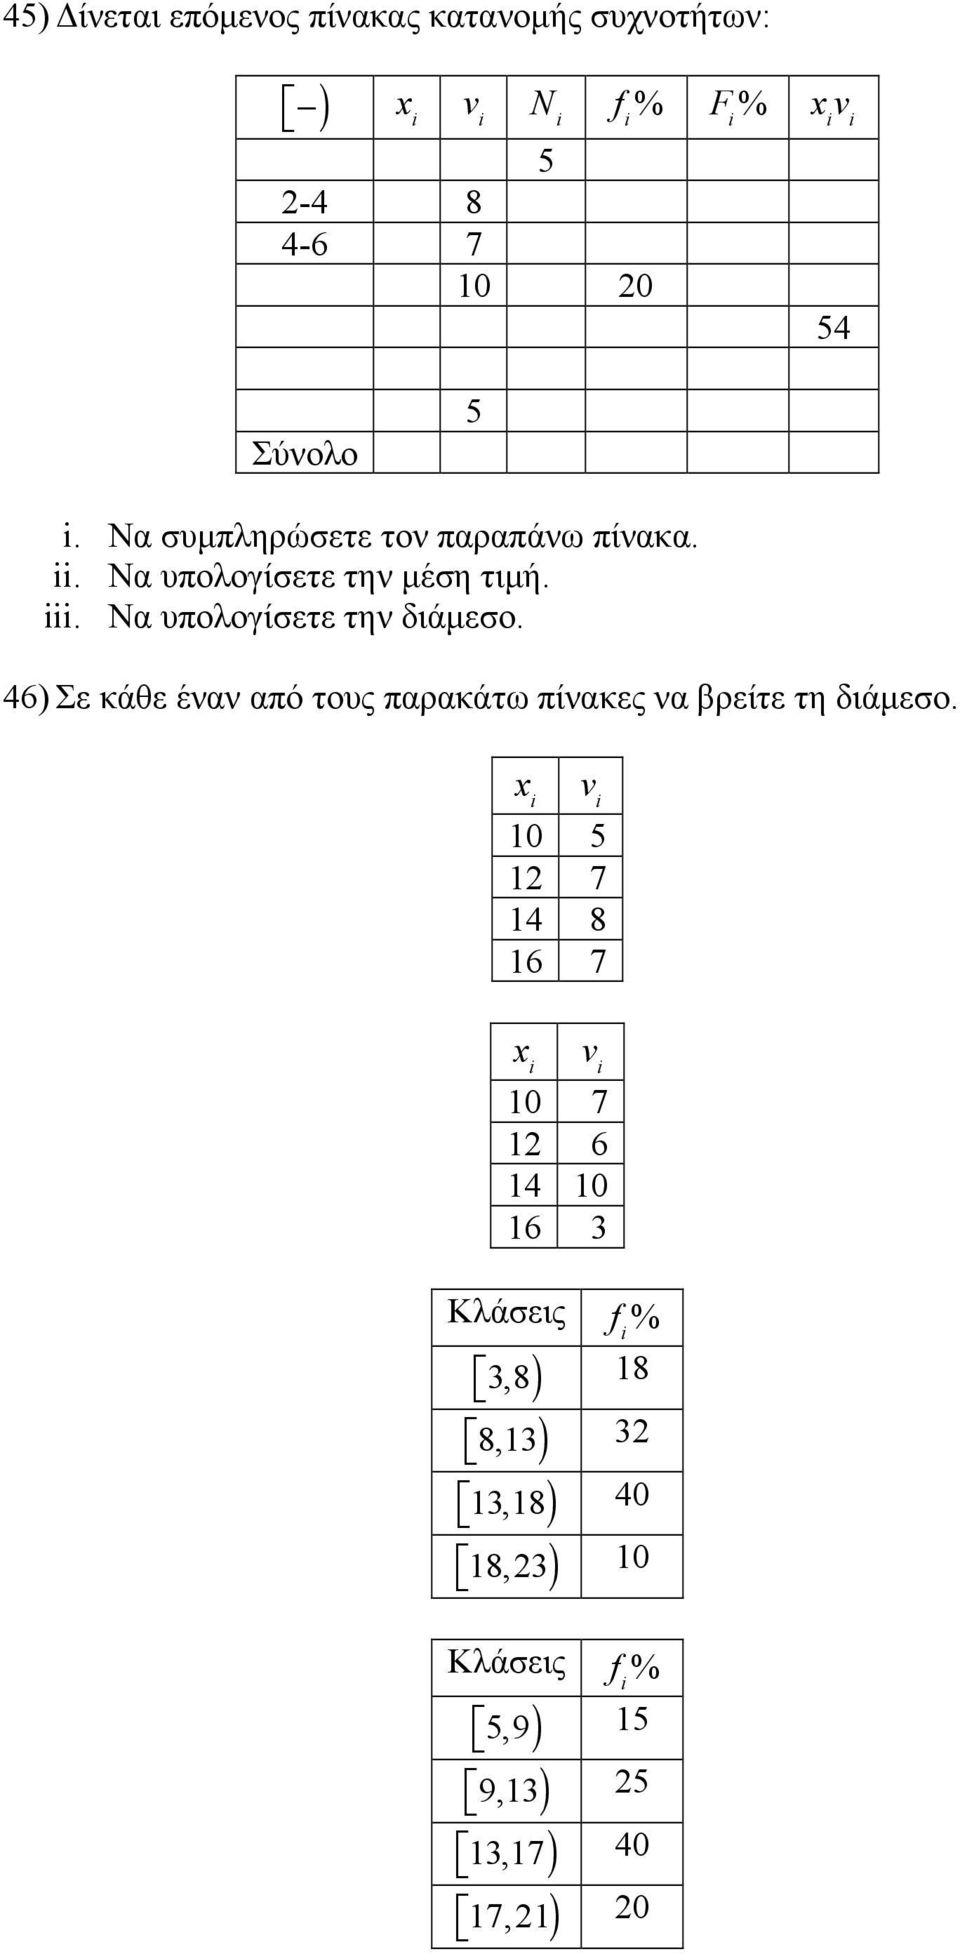 Να υπολογίσετε την διάµεσο. 46) Σε κάθε έναν από τους παρακάτω πίνακες να βρείτε τη διάµεσο.